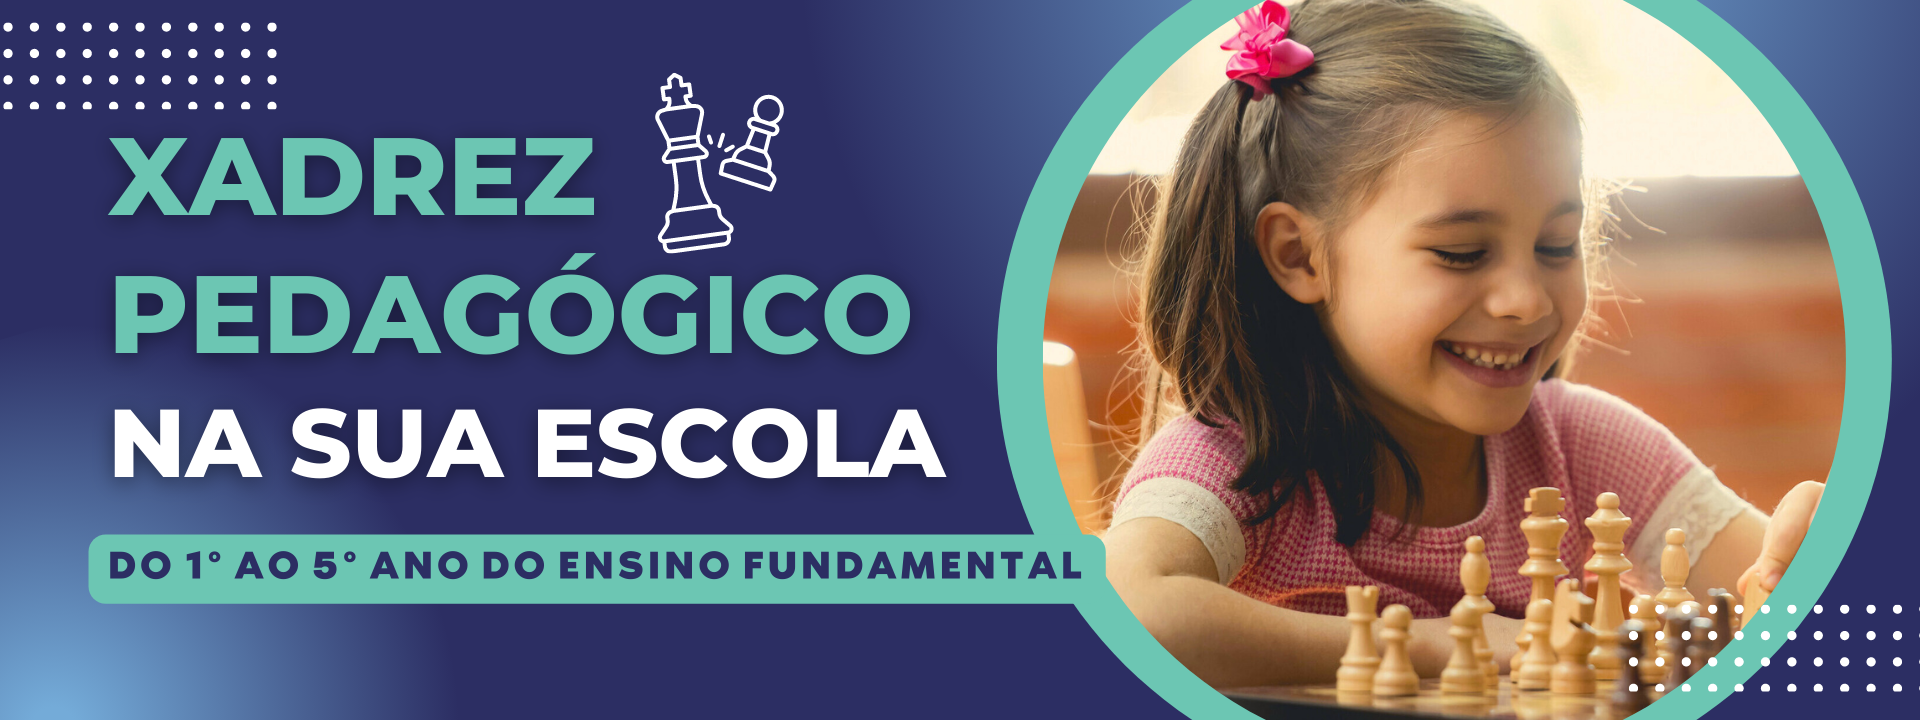 Sistema-X de Xadrez Escolar – O primiero sistema de ensino de xadrez escolar  do Brasil. O Sistema-X é um conjunto de soluções voltadas para a  implantação do jogo de xadrez como ferramenta